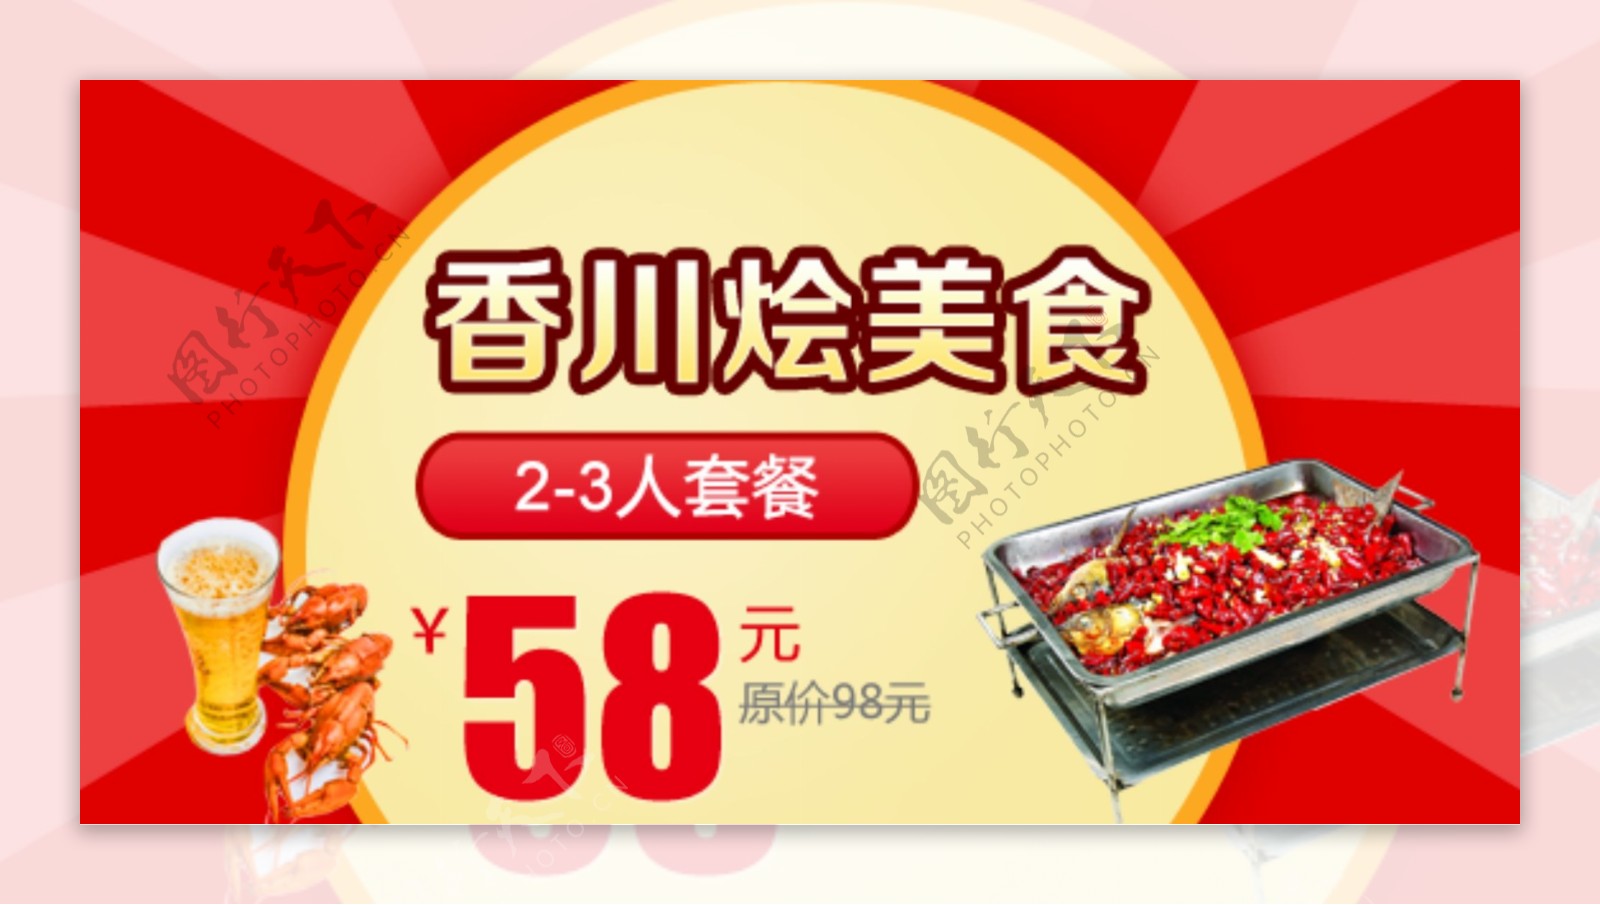 香川烩美食团购券图片